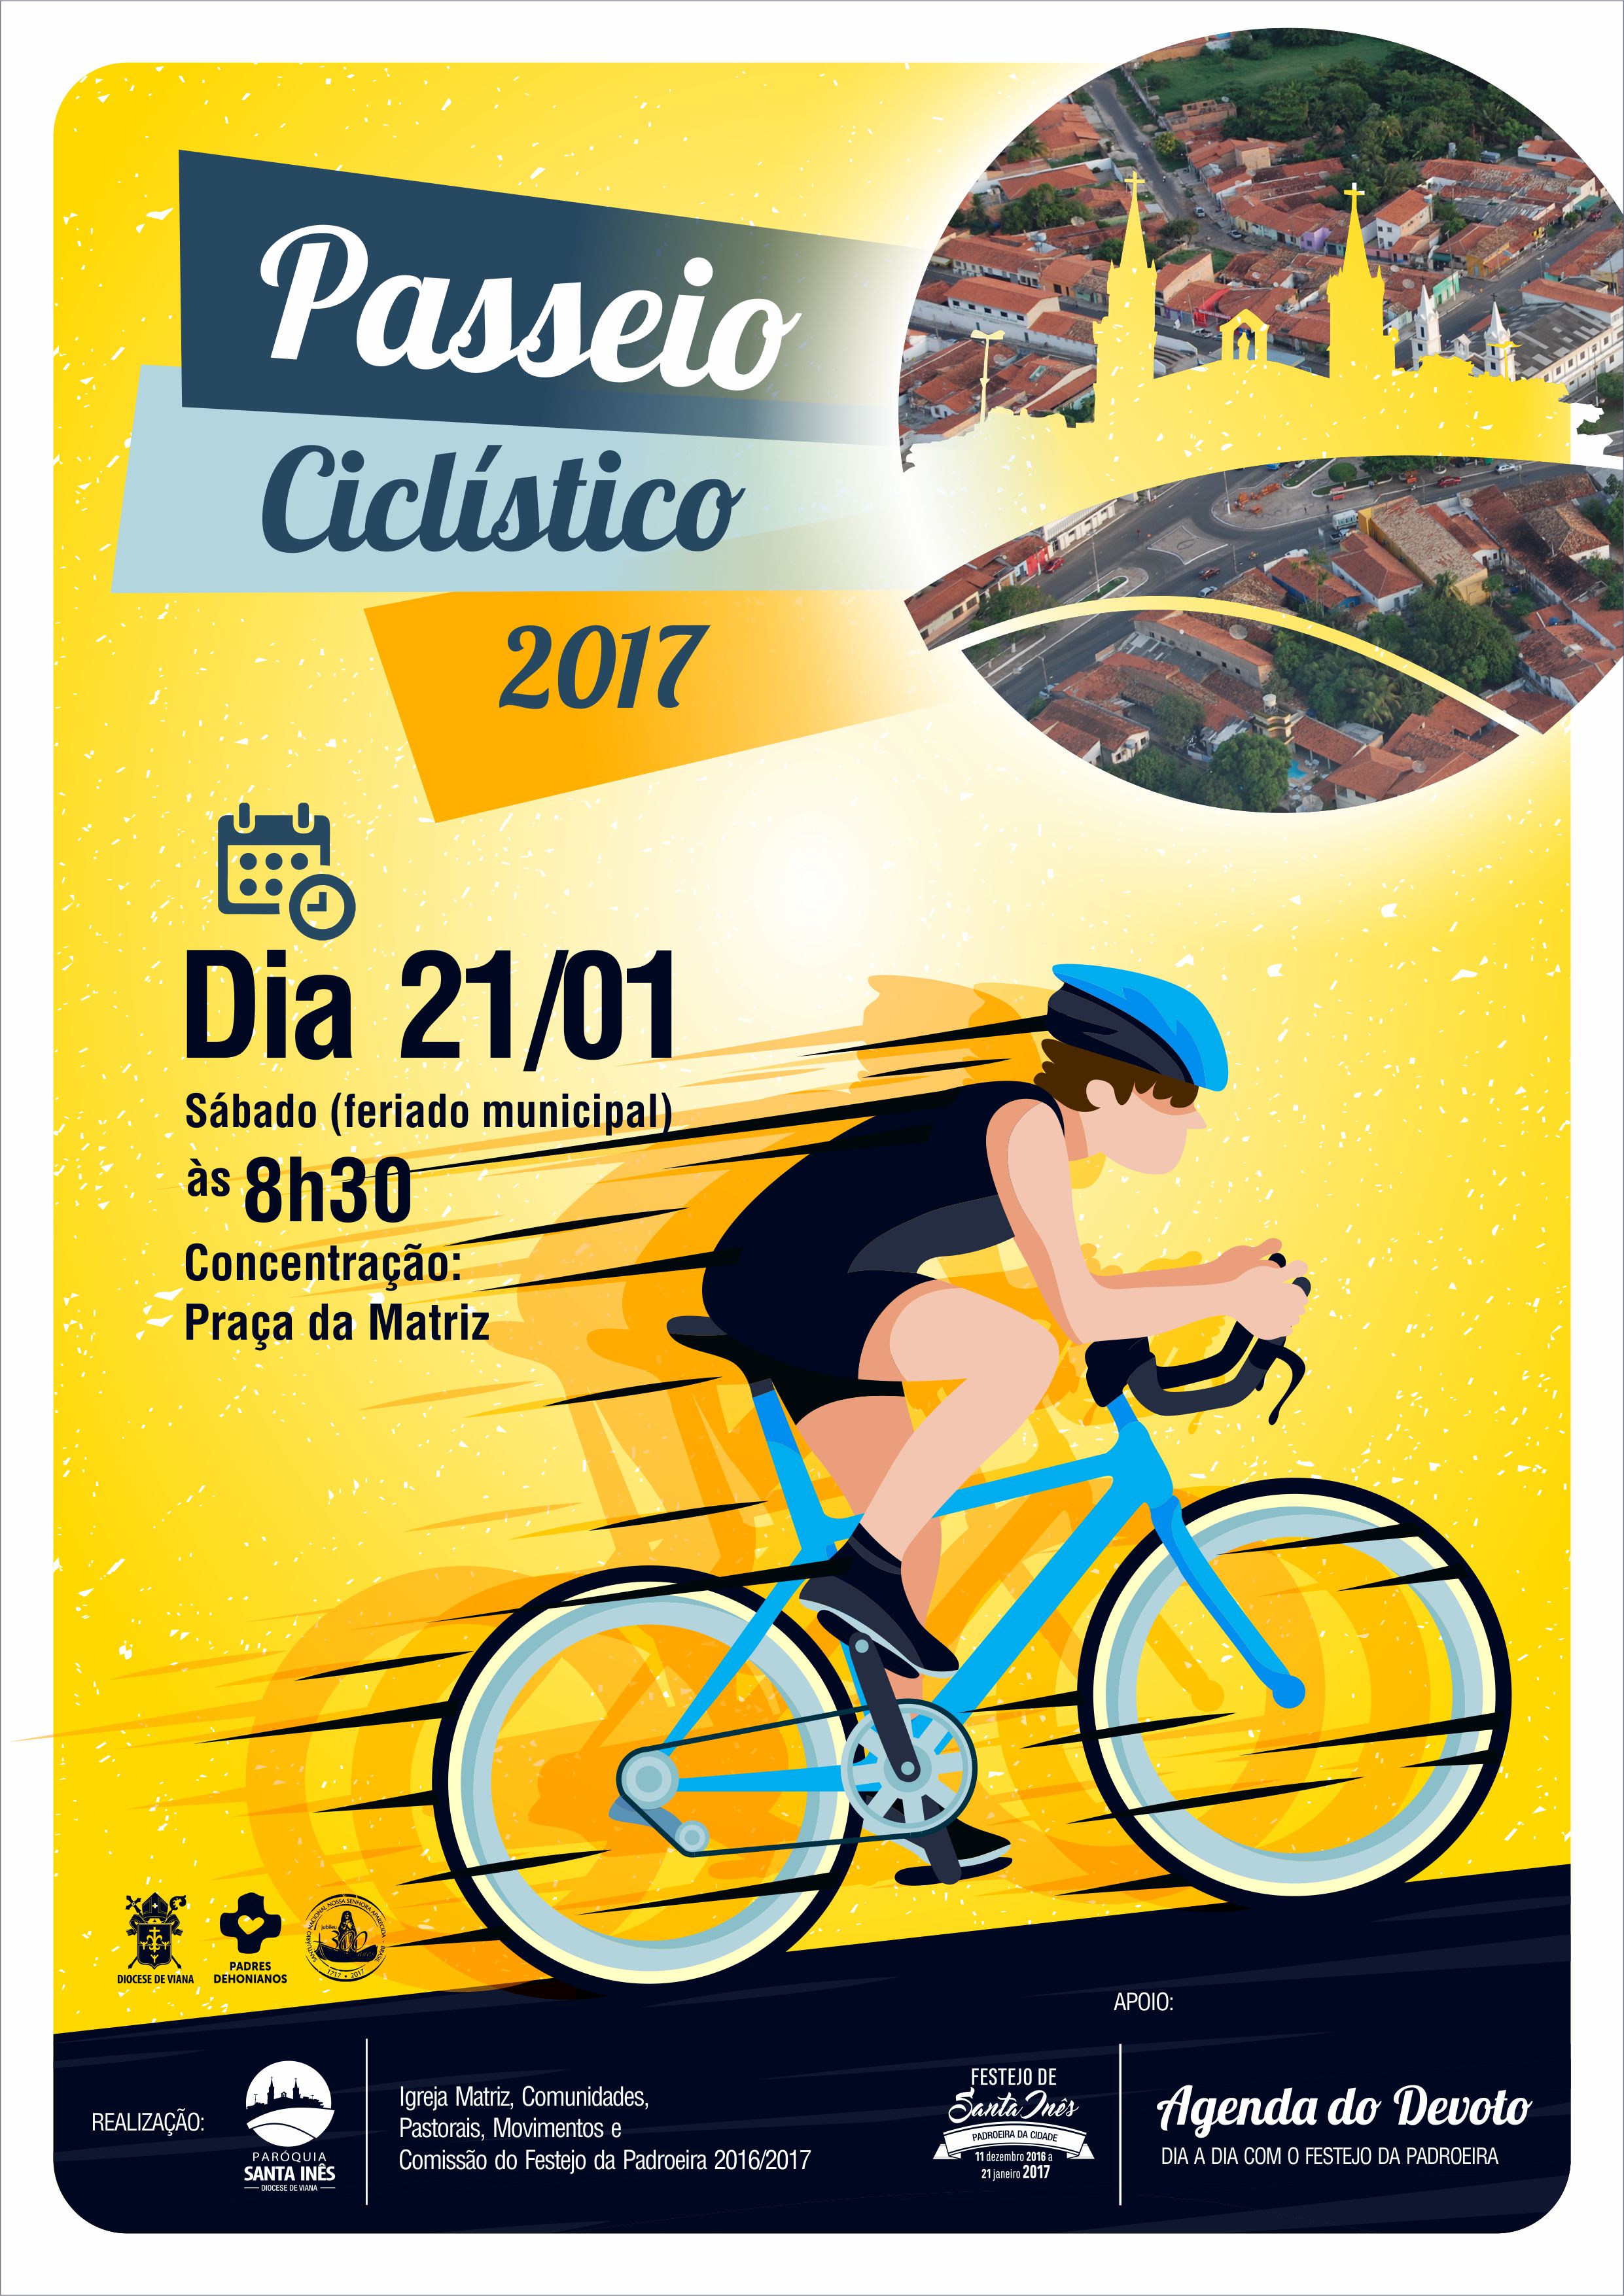 Paróquia Santa Inês realizará II Passeio Ciclístico em comemoração ao dia da Padroeira da Cidade